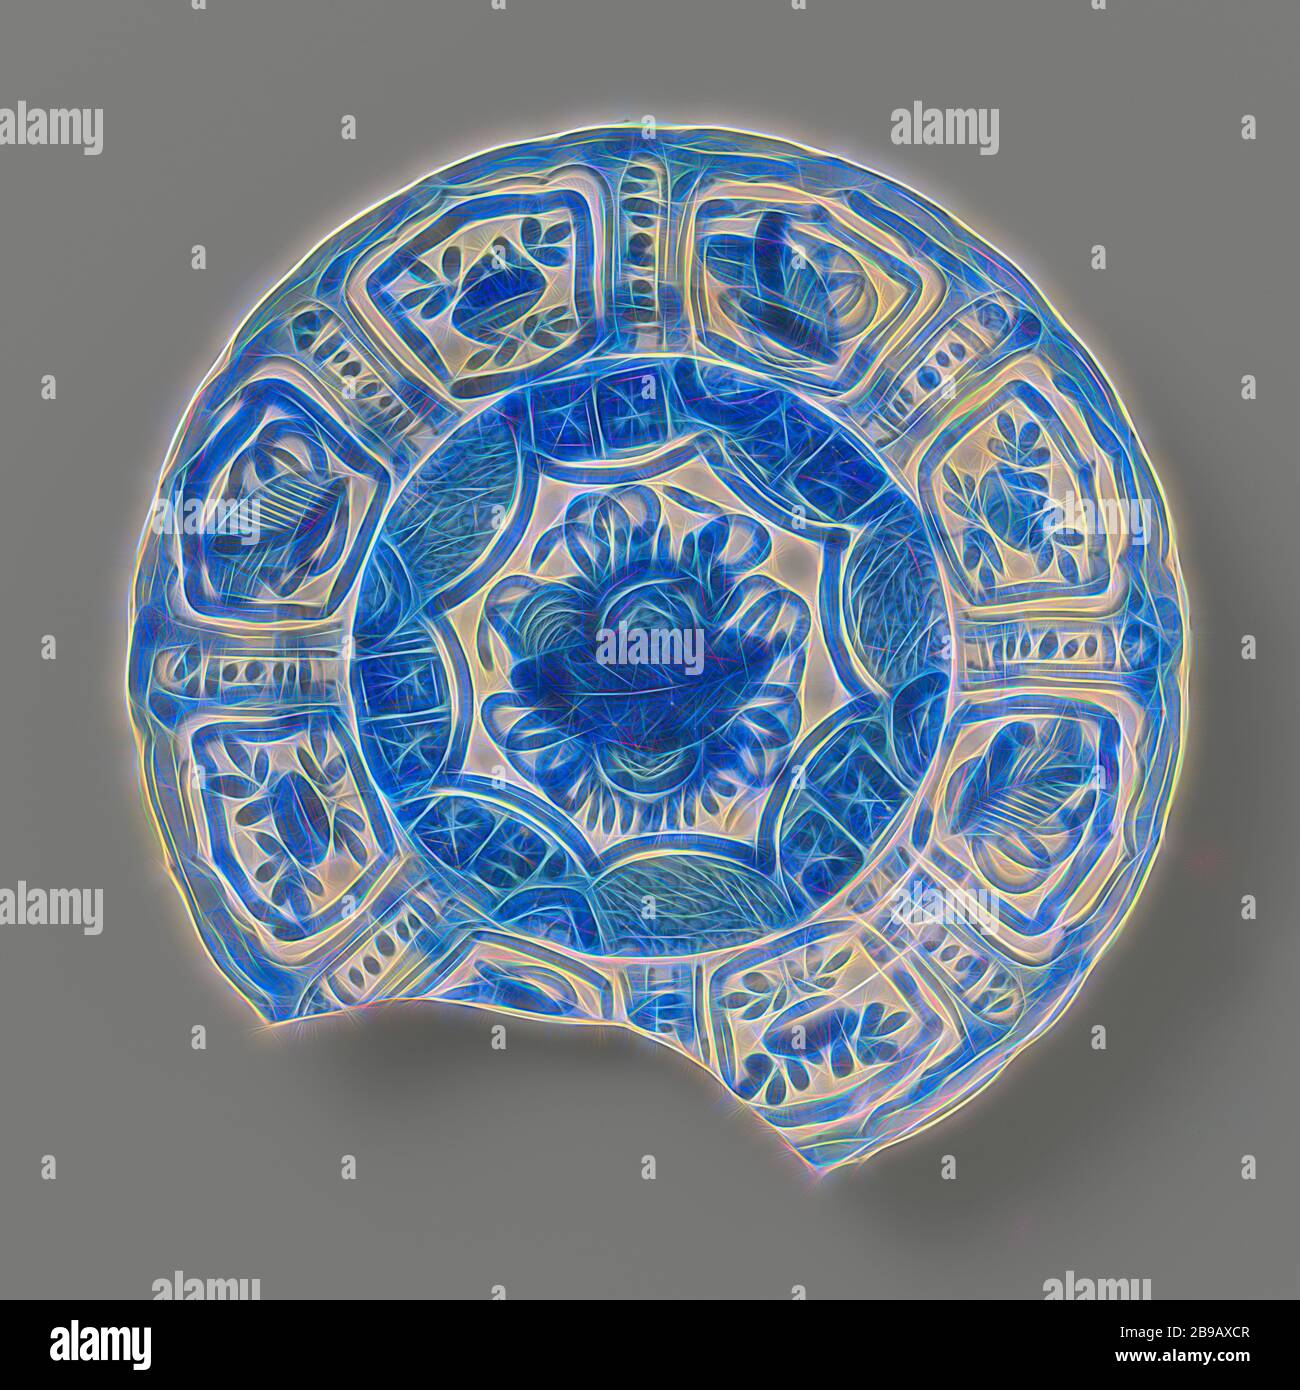 Plaque de porcelaine Kraak de l'ODC-navire le 'Witte Leeuw', Chine, avant 1613, Ming-Dynasty (1368-1644) / Wanli-période (1573-1619), porcelaine, porcelaine osseuse, glaçure, cobalt (minéral), vitrification, h 3.1 cm × d 21.9 cm, repensé par Gibon, conception de rayons lumineux chaleureux et joyeux. L'art classique réinventé avec une touche moderne. Photographie inspirée par le futurisme, embrassant l'énergie dynamique de la technologie moderne, le mouvement, la vitesse et révolutionnez la culture. Banque D'Images